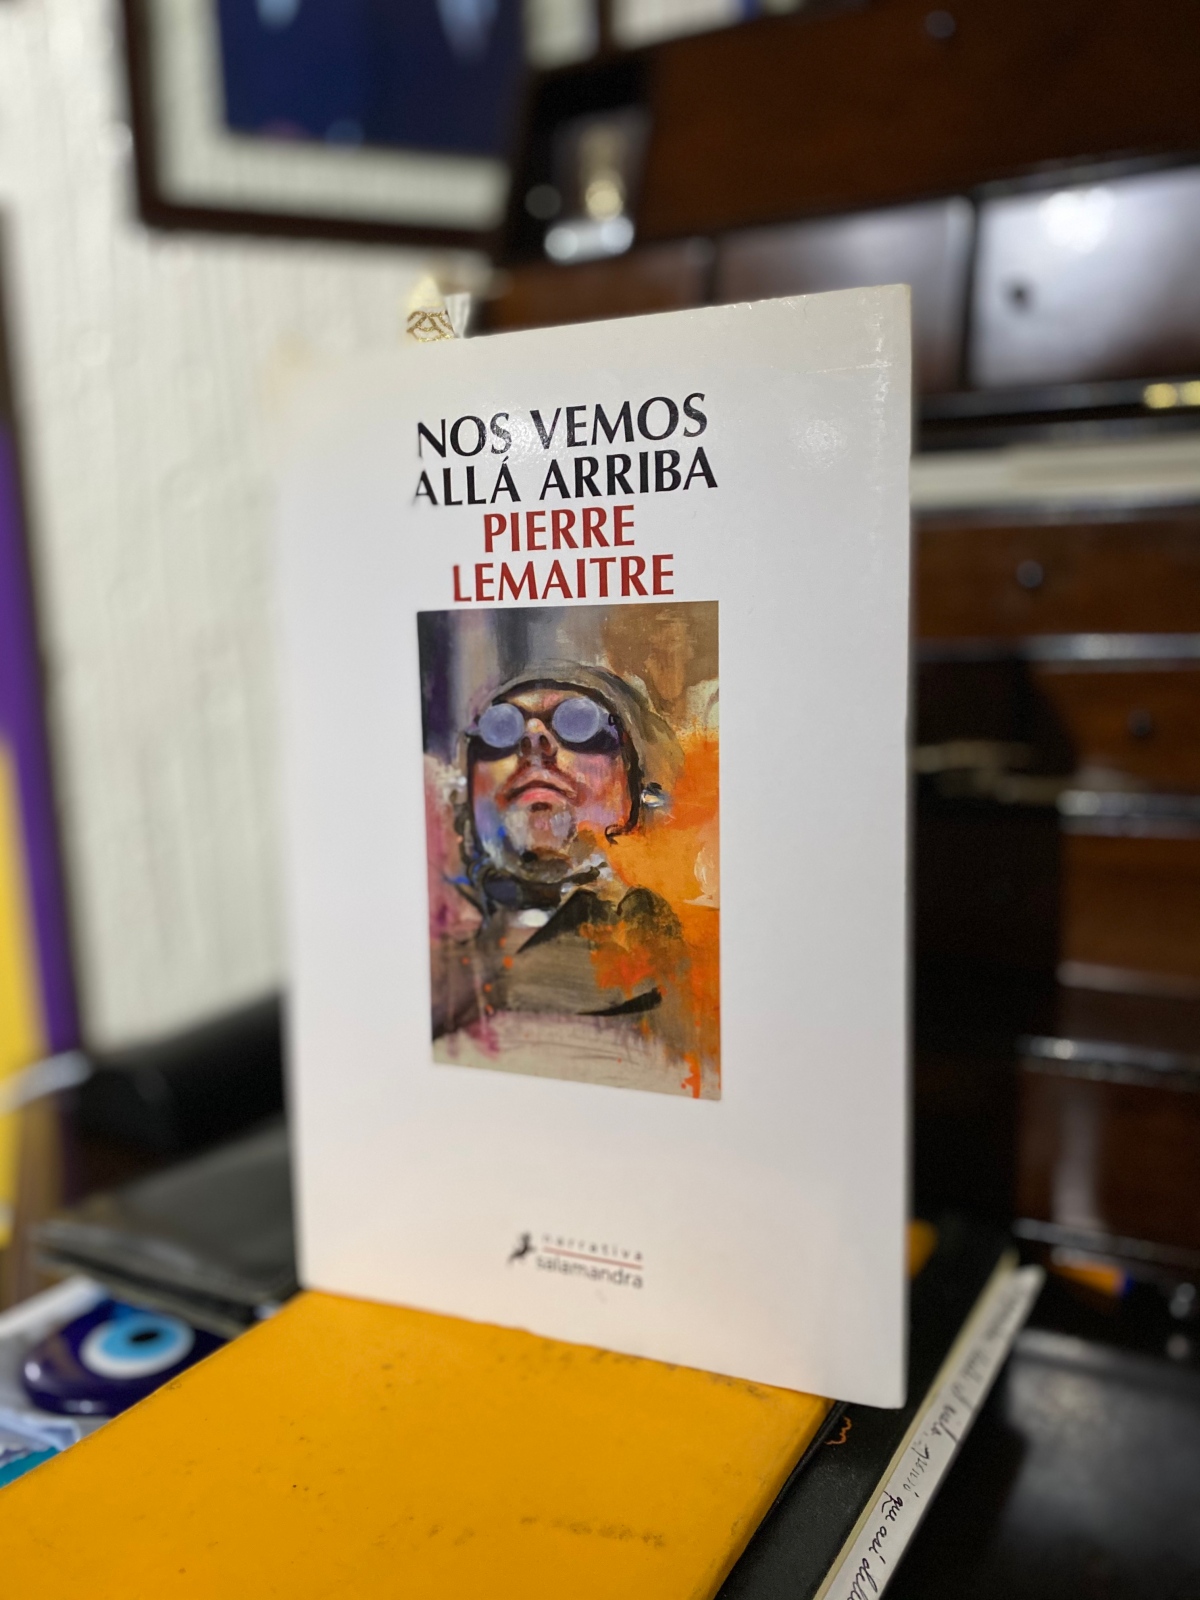 El libro nuestro de cada martes: Nos vemos allá arriba de Pierre Lemaitre, ed. Salamandra